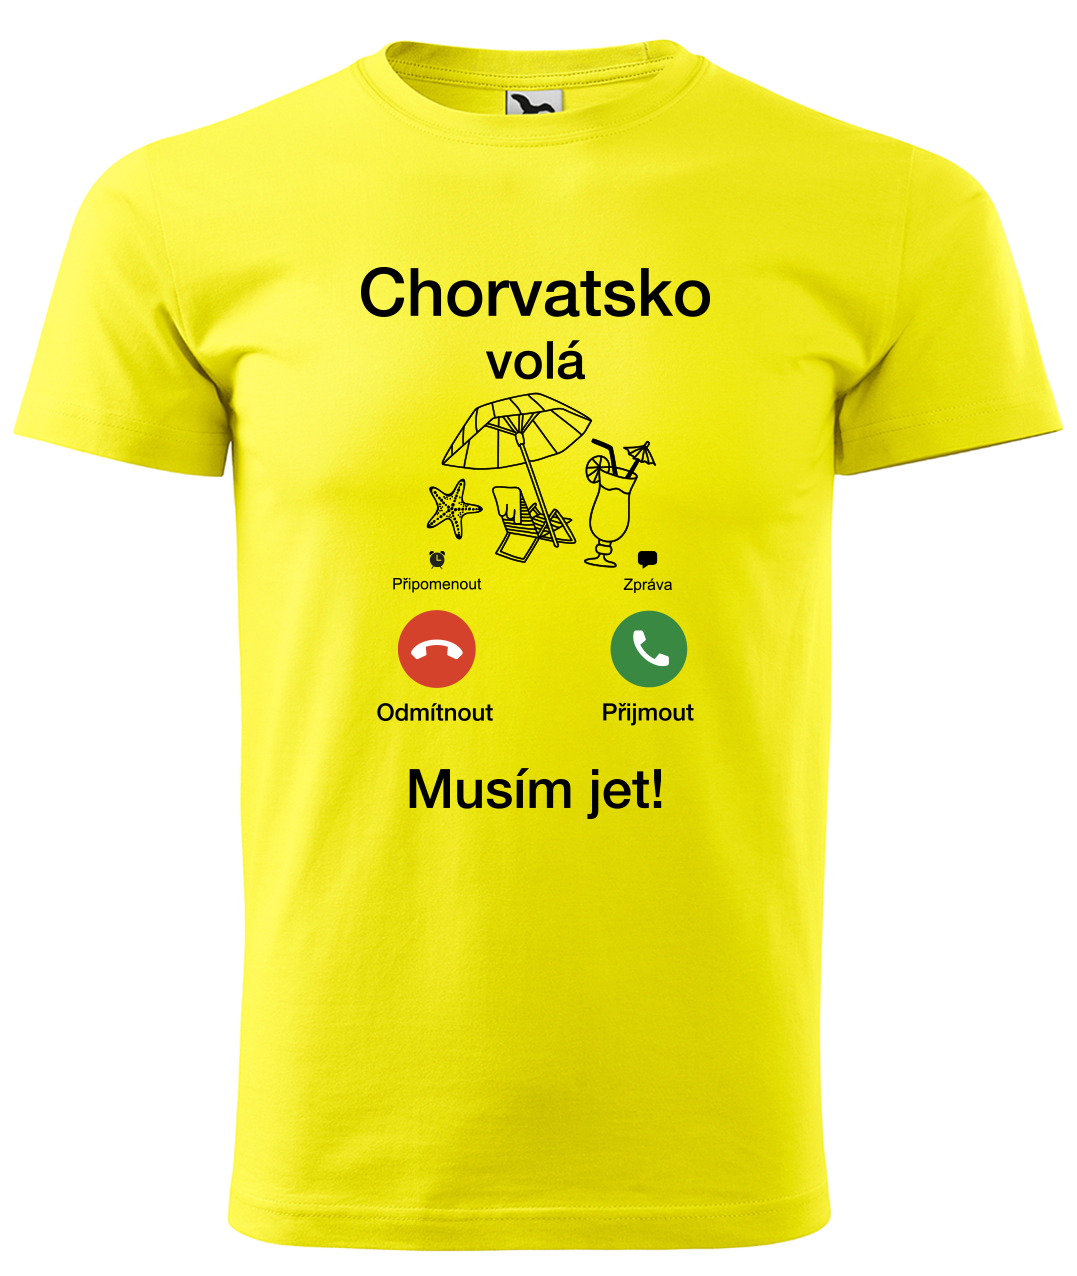 Dětské cestovatelské tričko - Chorvatsko volá - musím jet! Velikost: 4 roky / 110 cm, Barva: Žlutá (04)